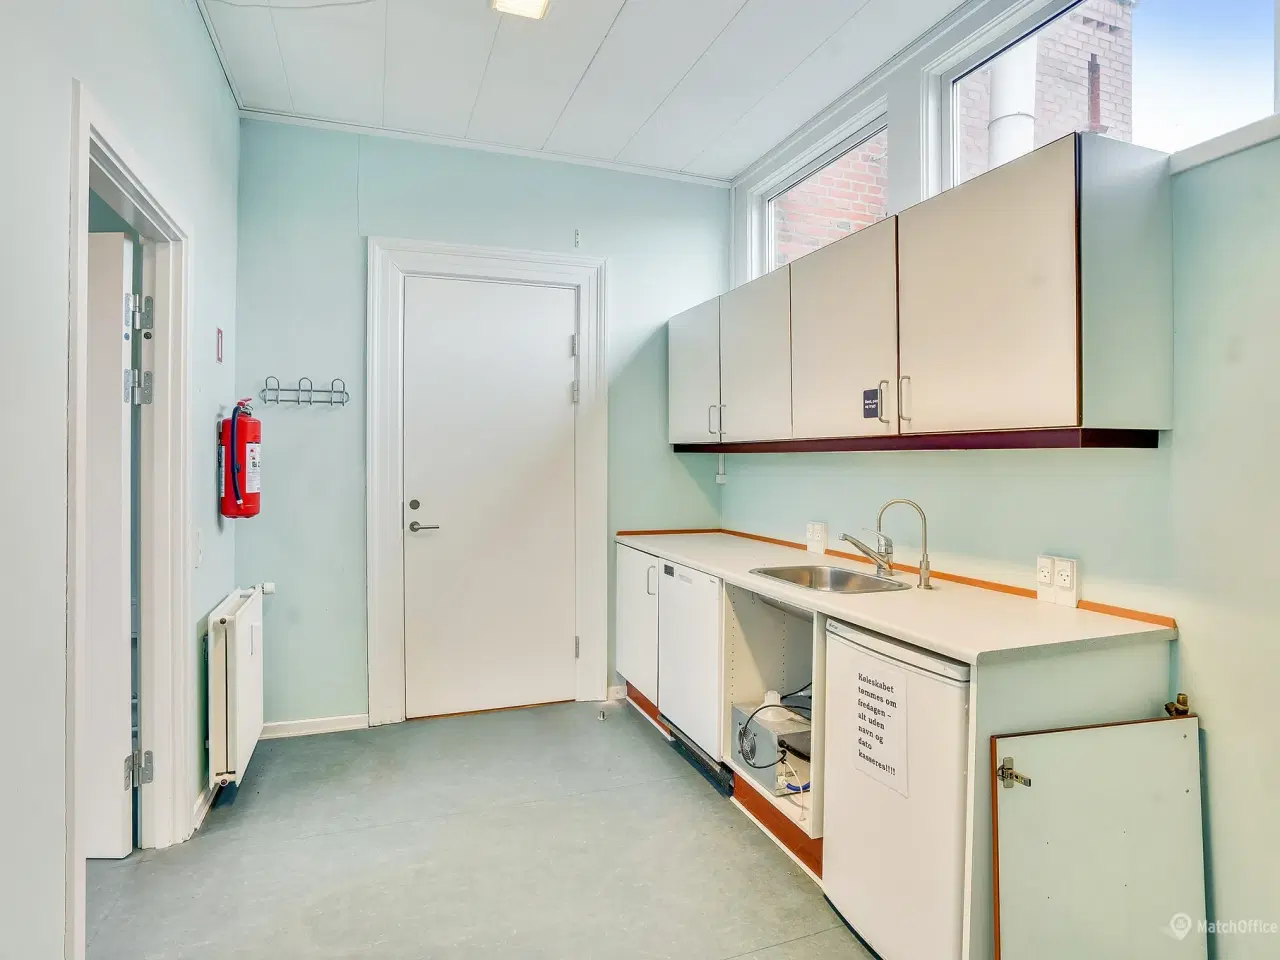 Billede 12 - Spændende kontorlokaler ved Indkøbscentret BROEN, i Esbjerg.